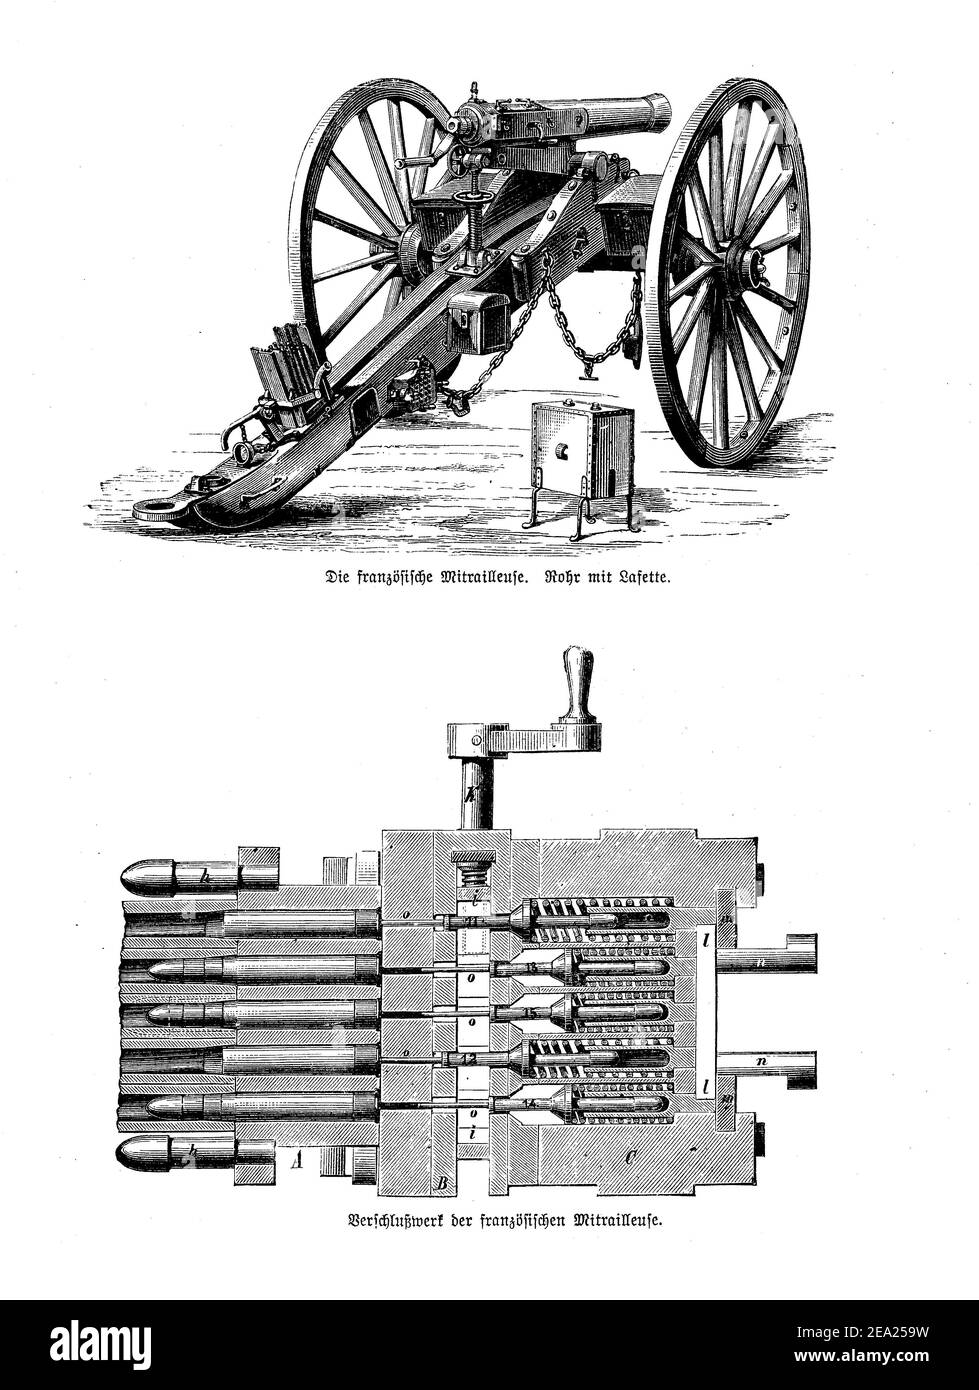 Pasamanos francés, ametralladora montada en la placa del chasis, con detalle de cartucho y mecanismo de carga, finales del siglo 19 Foto de stock